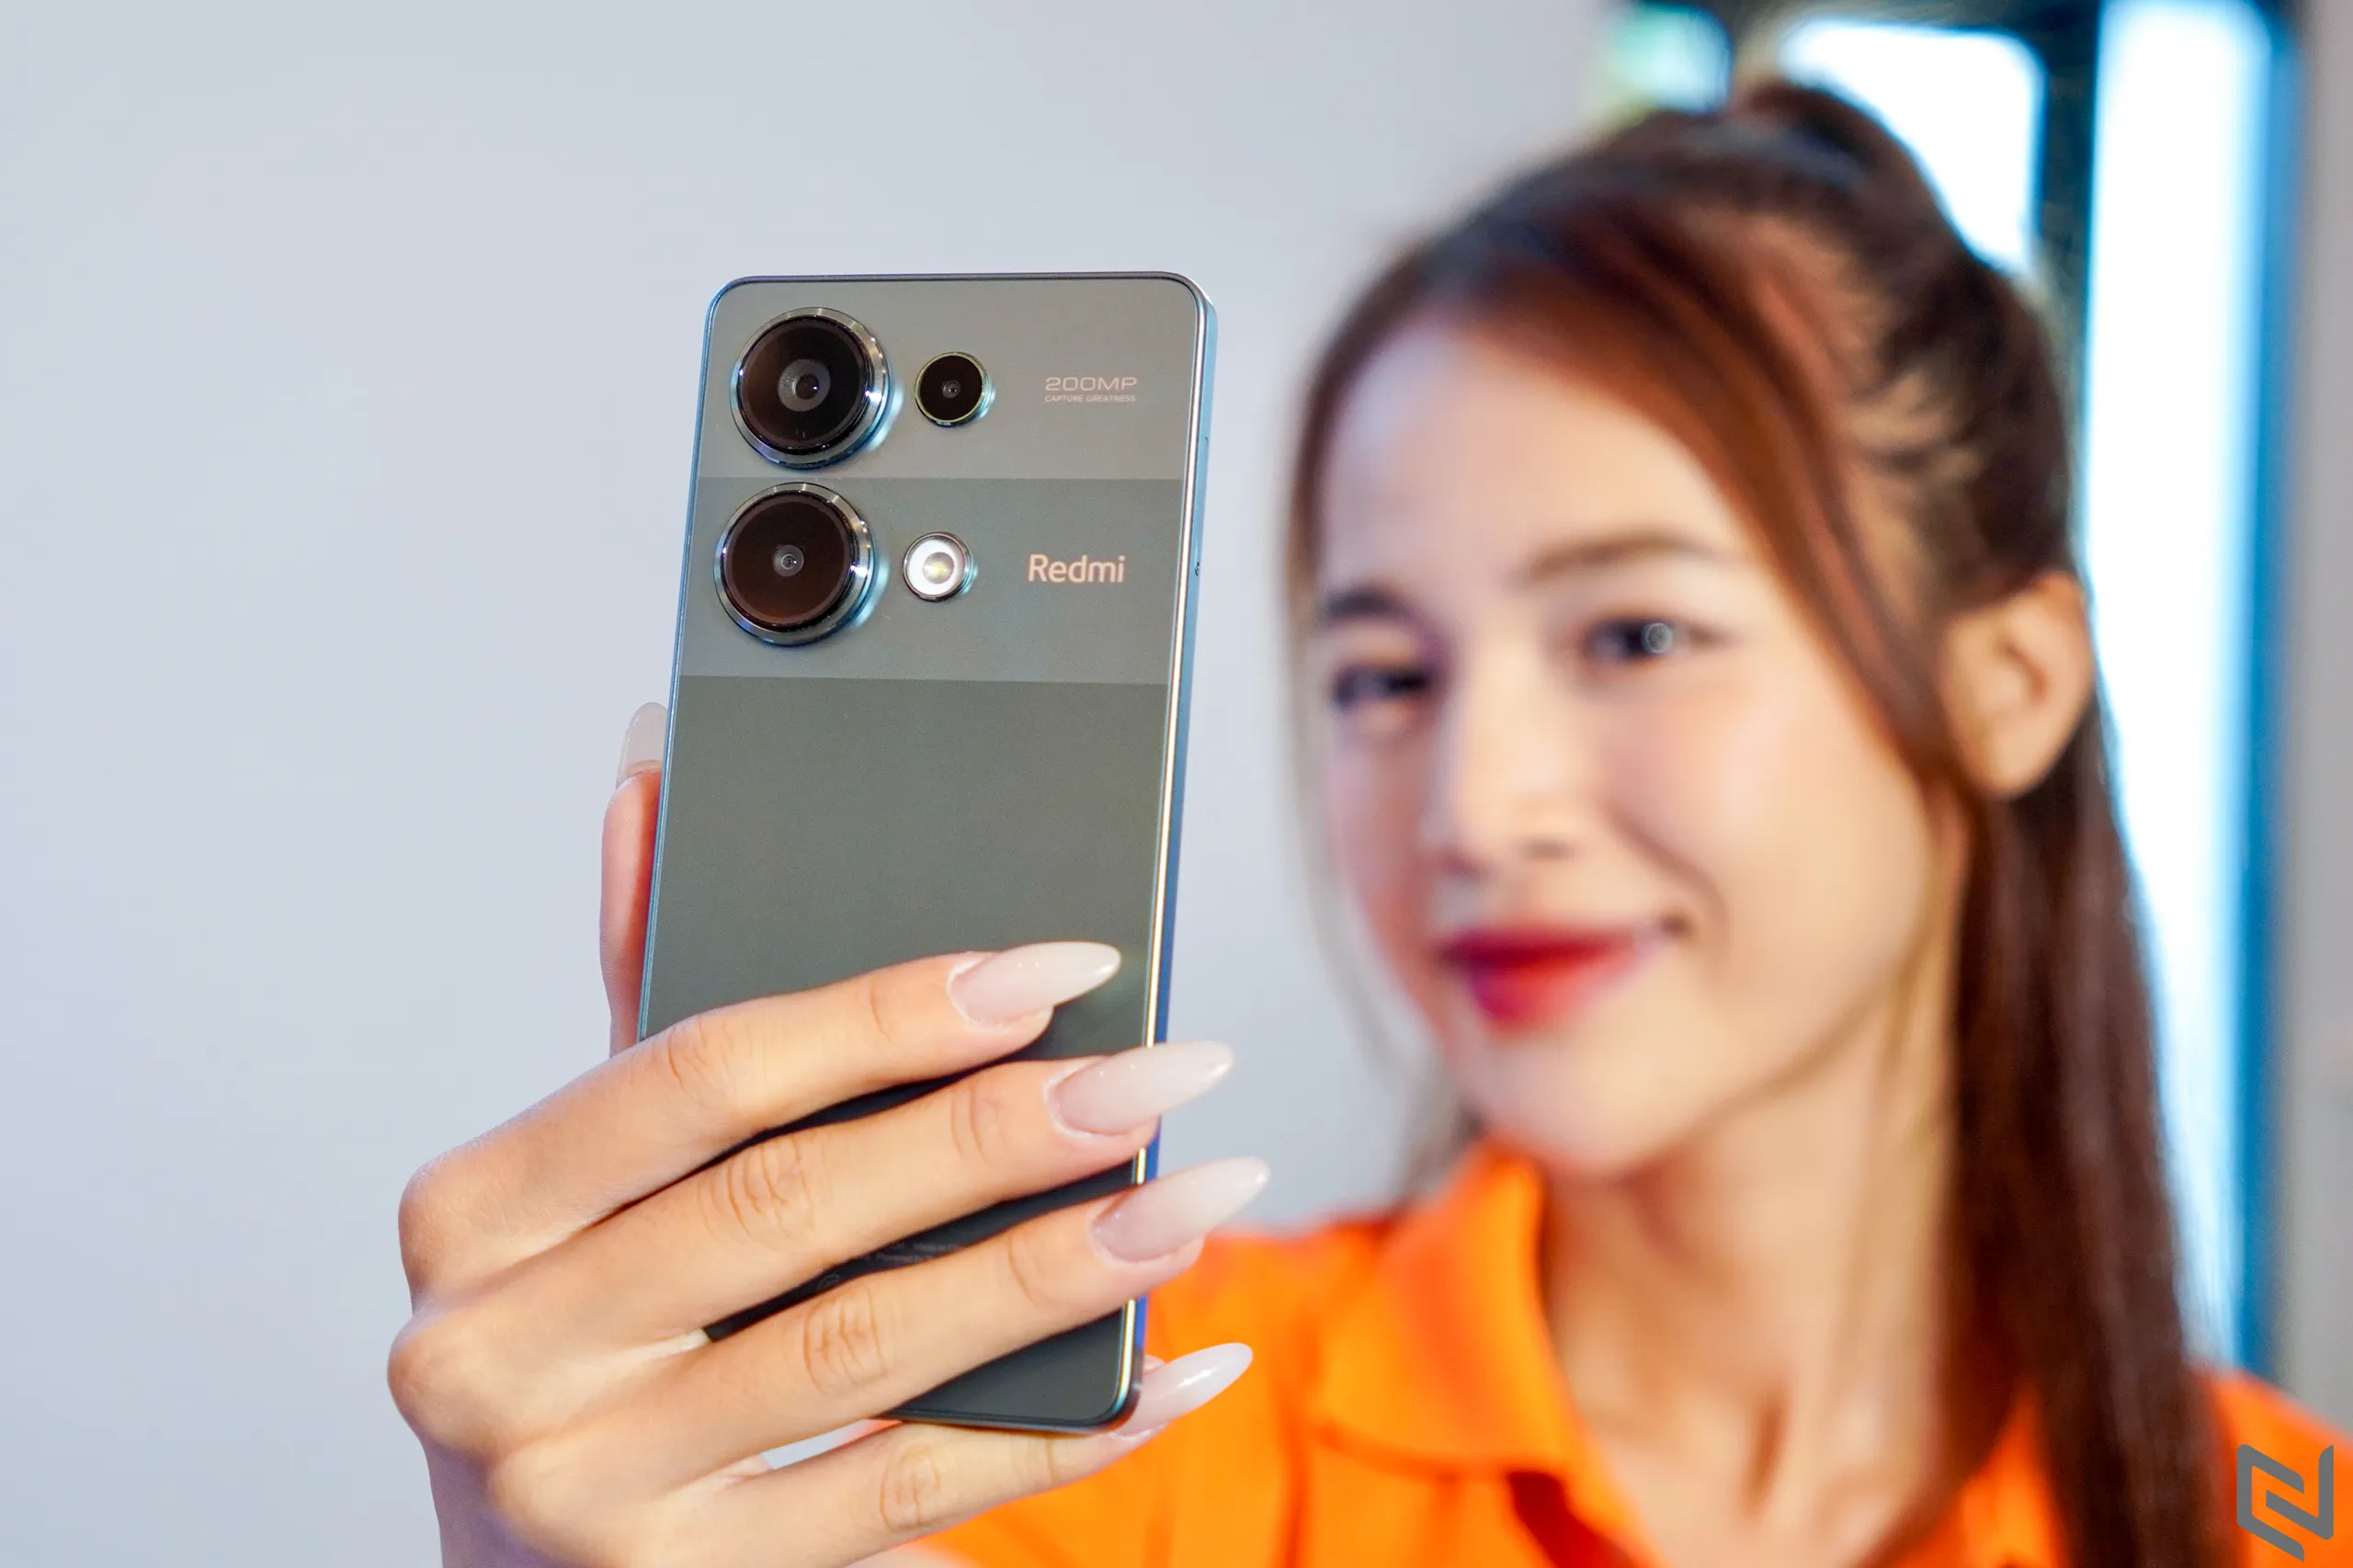 Redmi Note 13 Pro ra mắt tại Việt Nam: Camera 200MP, pin 5000mAh với giá từ 7 triệu đồng